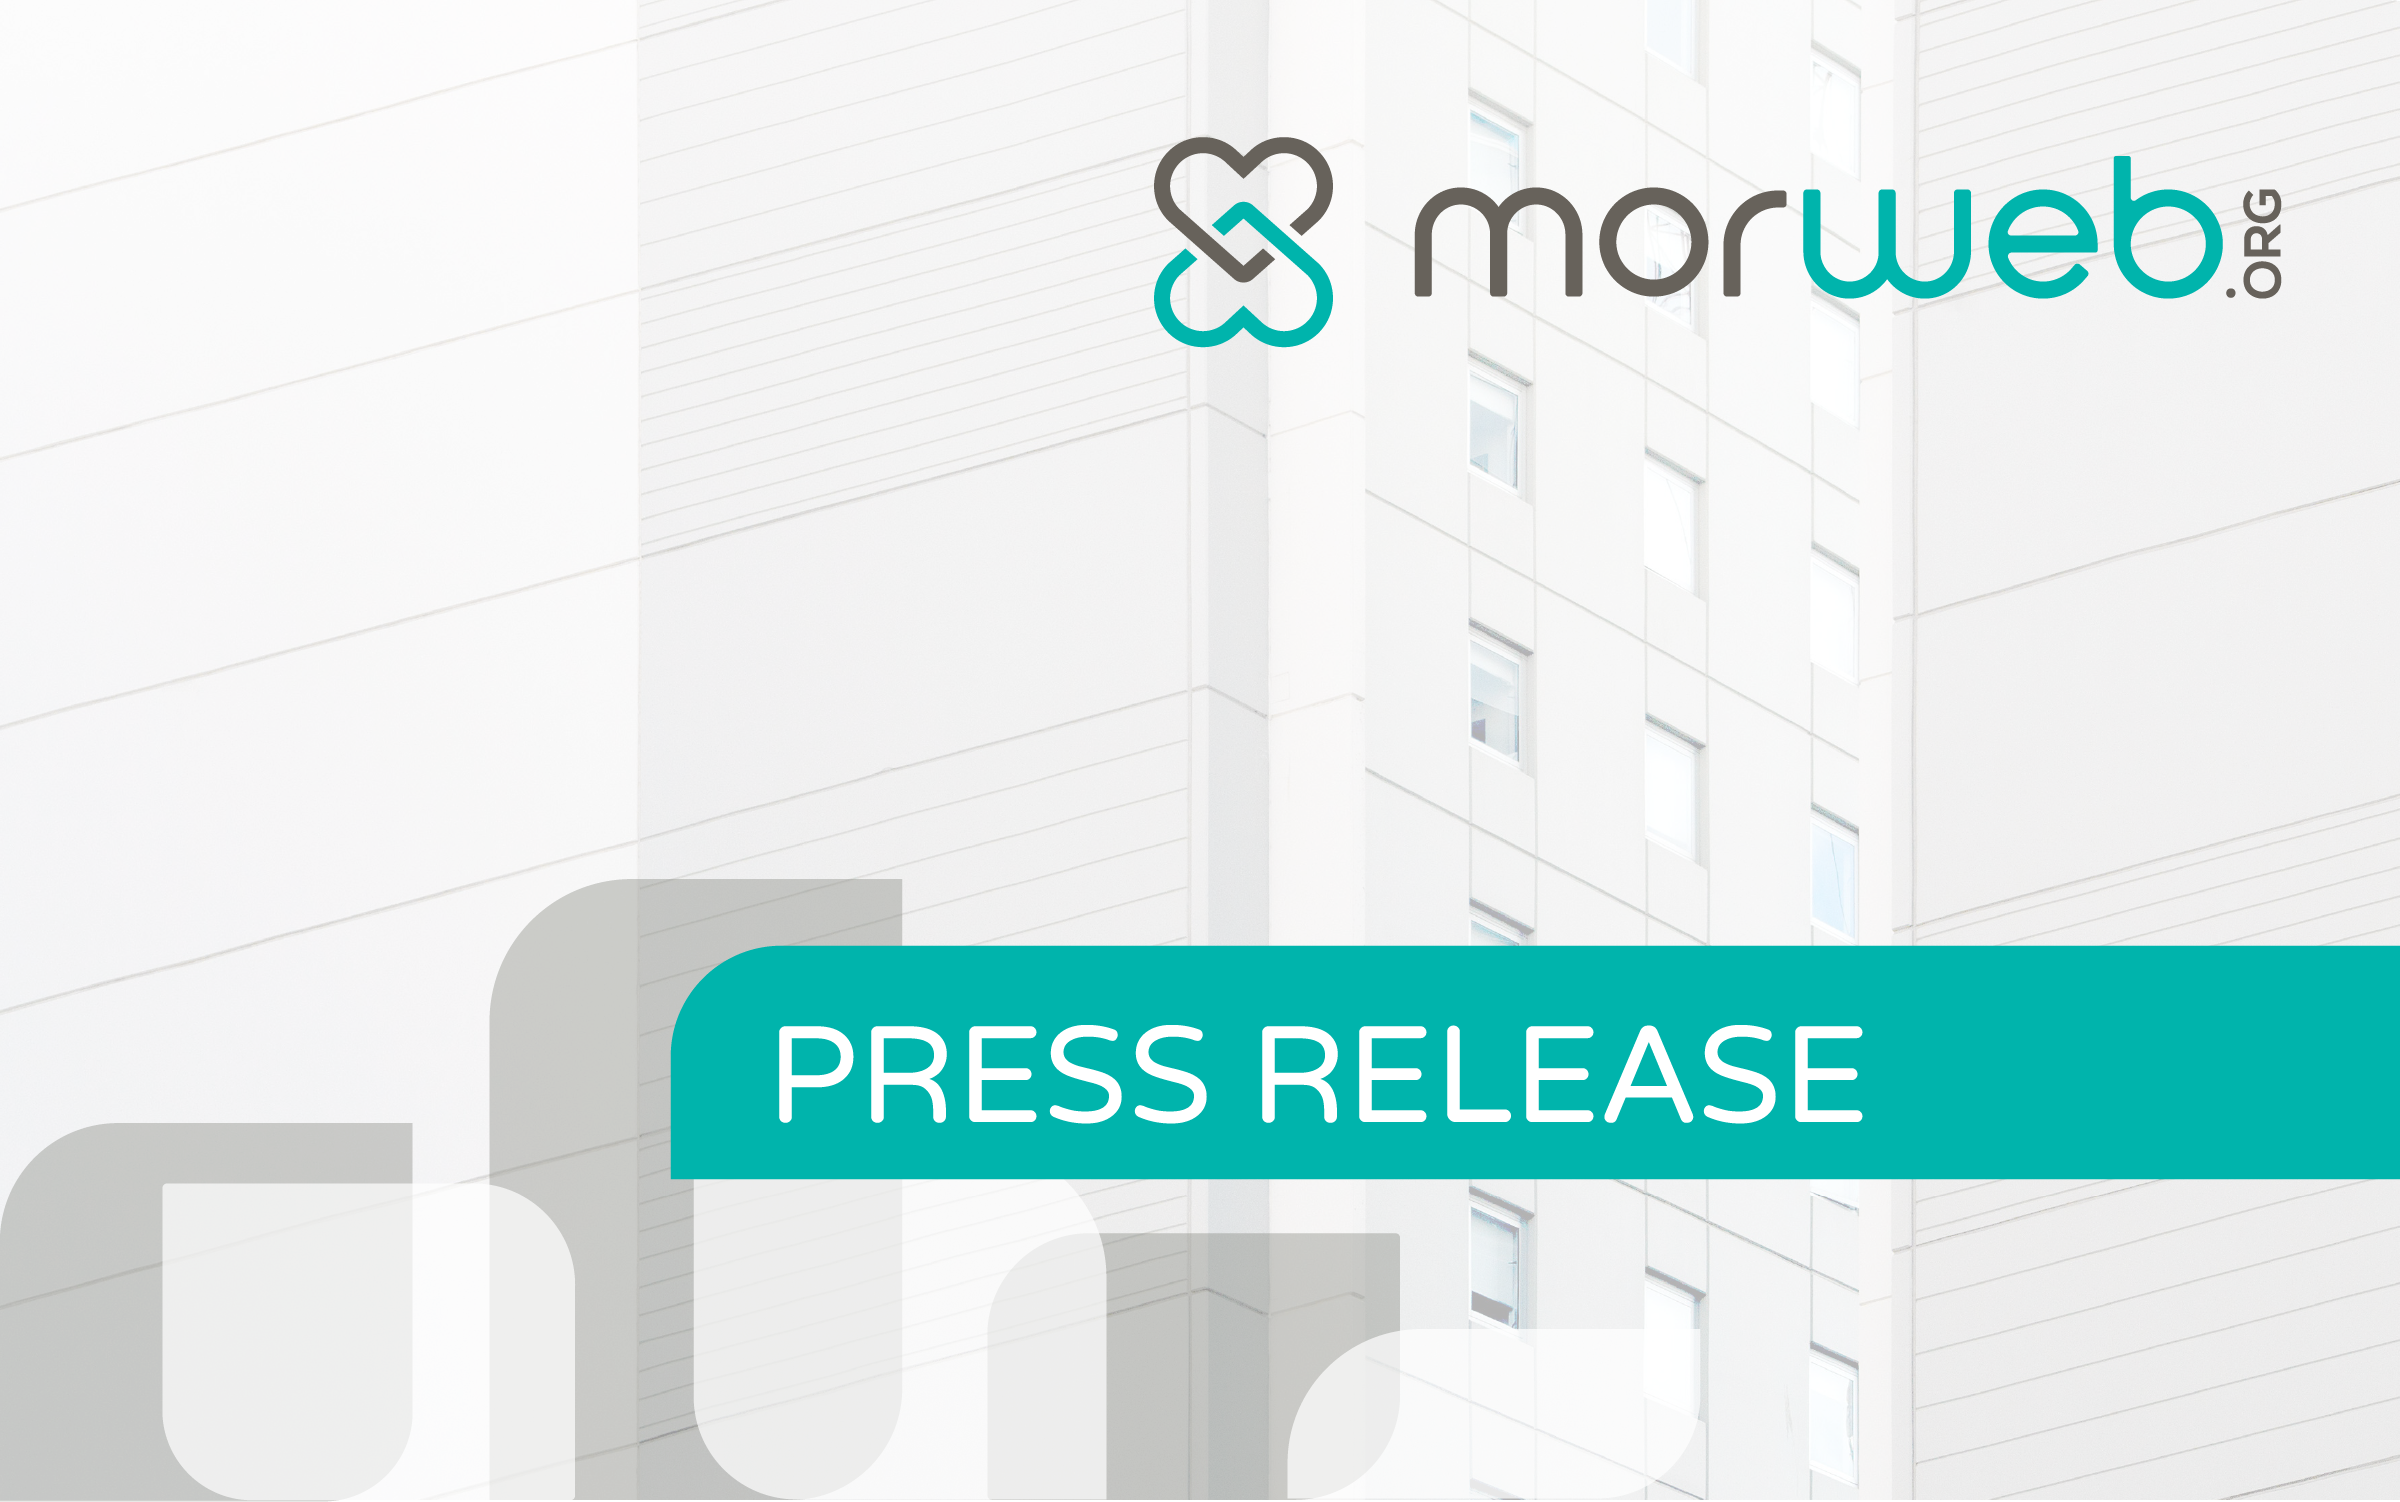 Morweb press release announcement